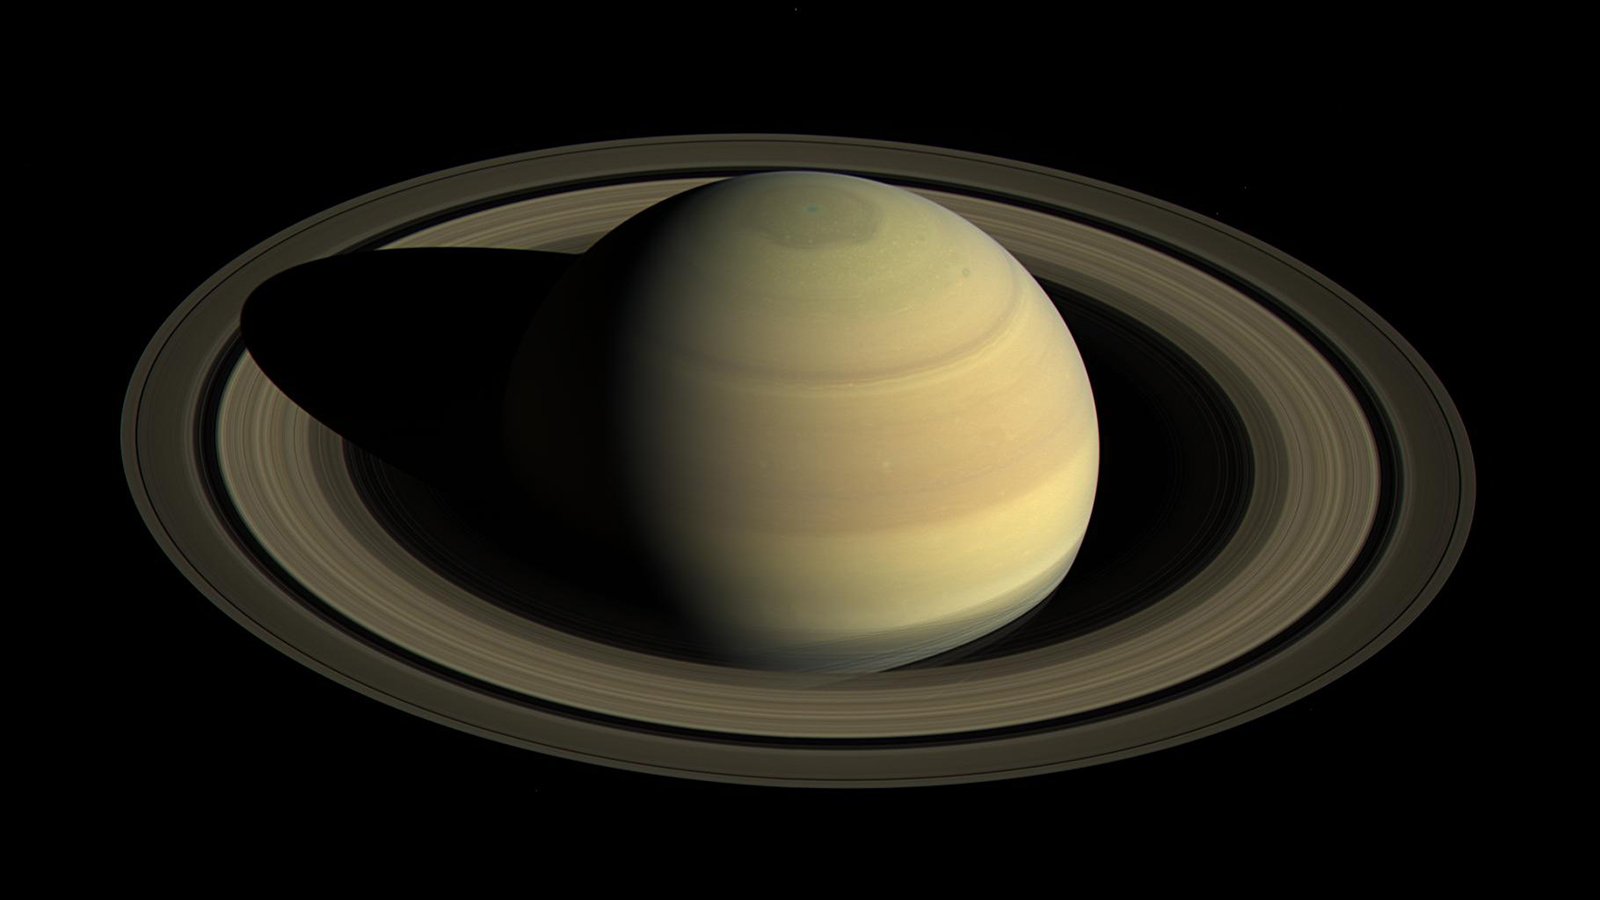 Enquanto temos apenas uma lua por aqui, Saturno conta mais de oitenta satélites naturais